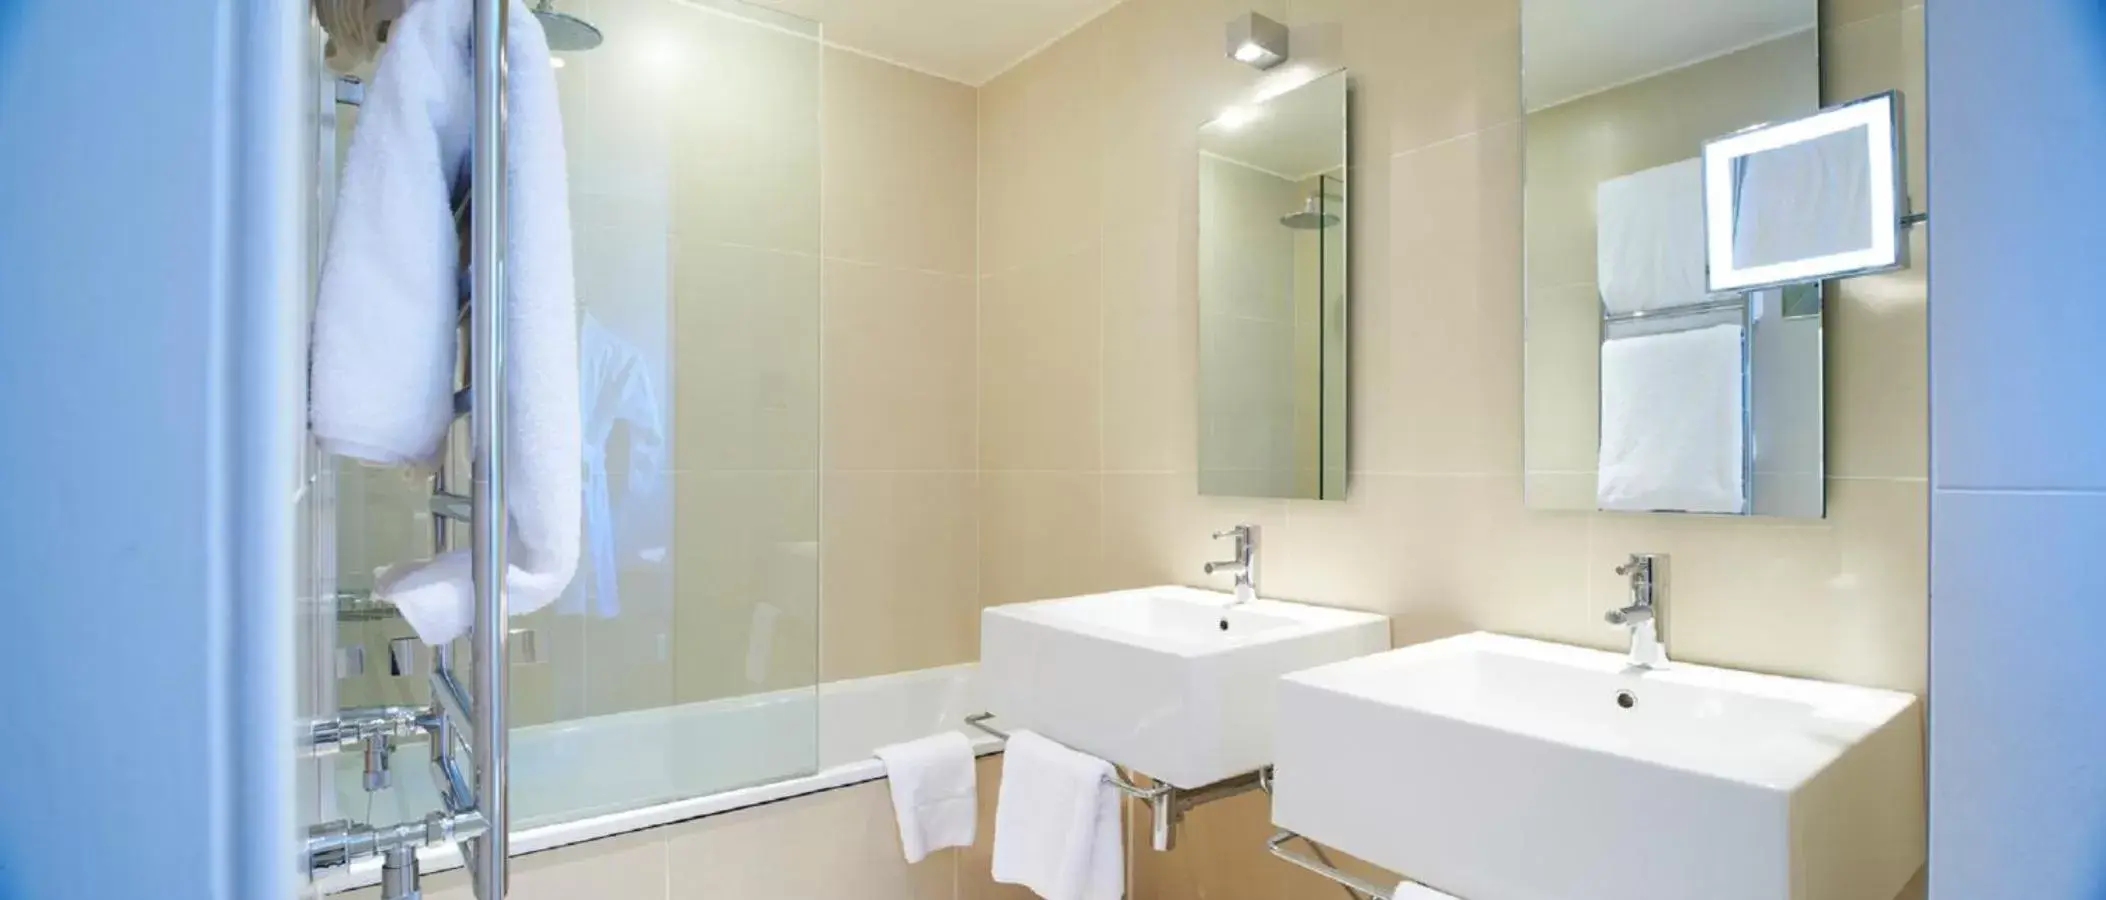 Bathroom in Durrants Hotel